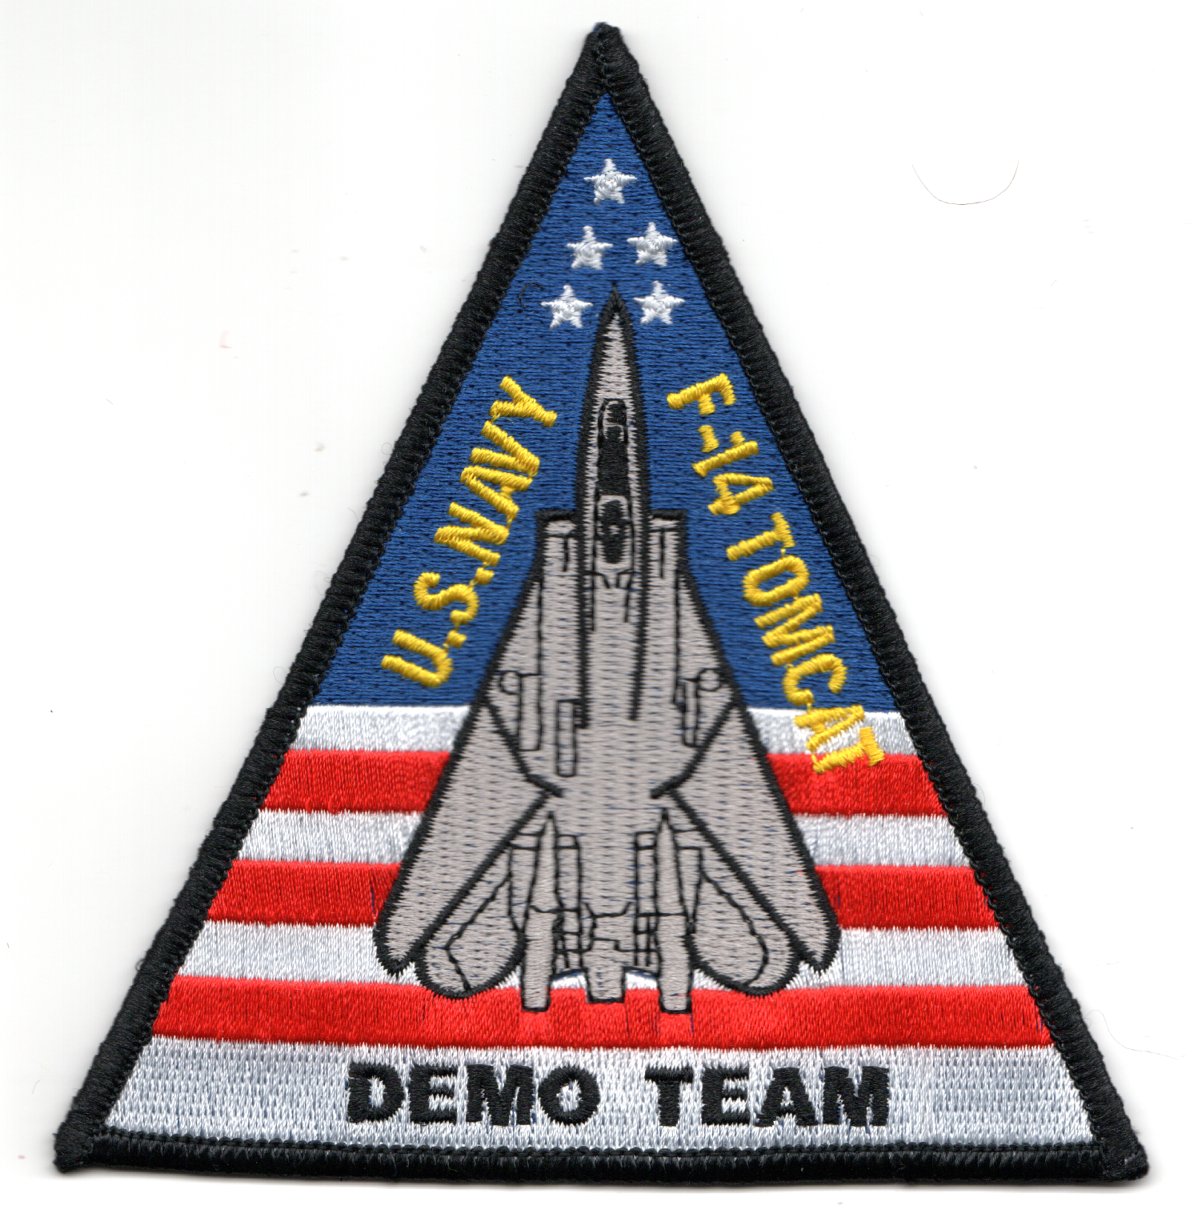 VF-101 *Demo Team* Aircraft Triangle (R/W/B)